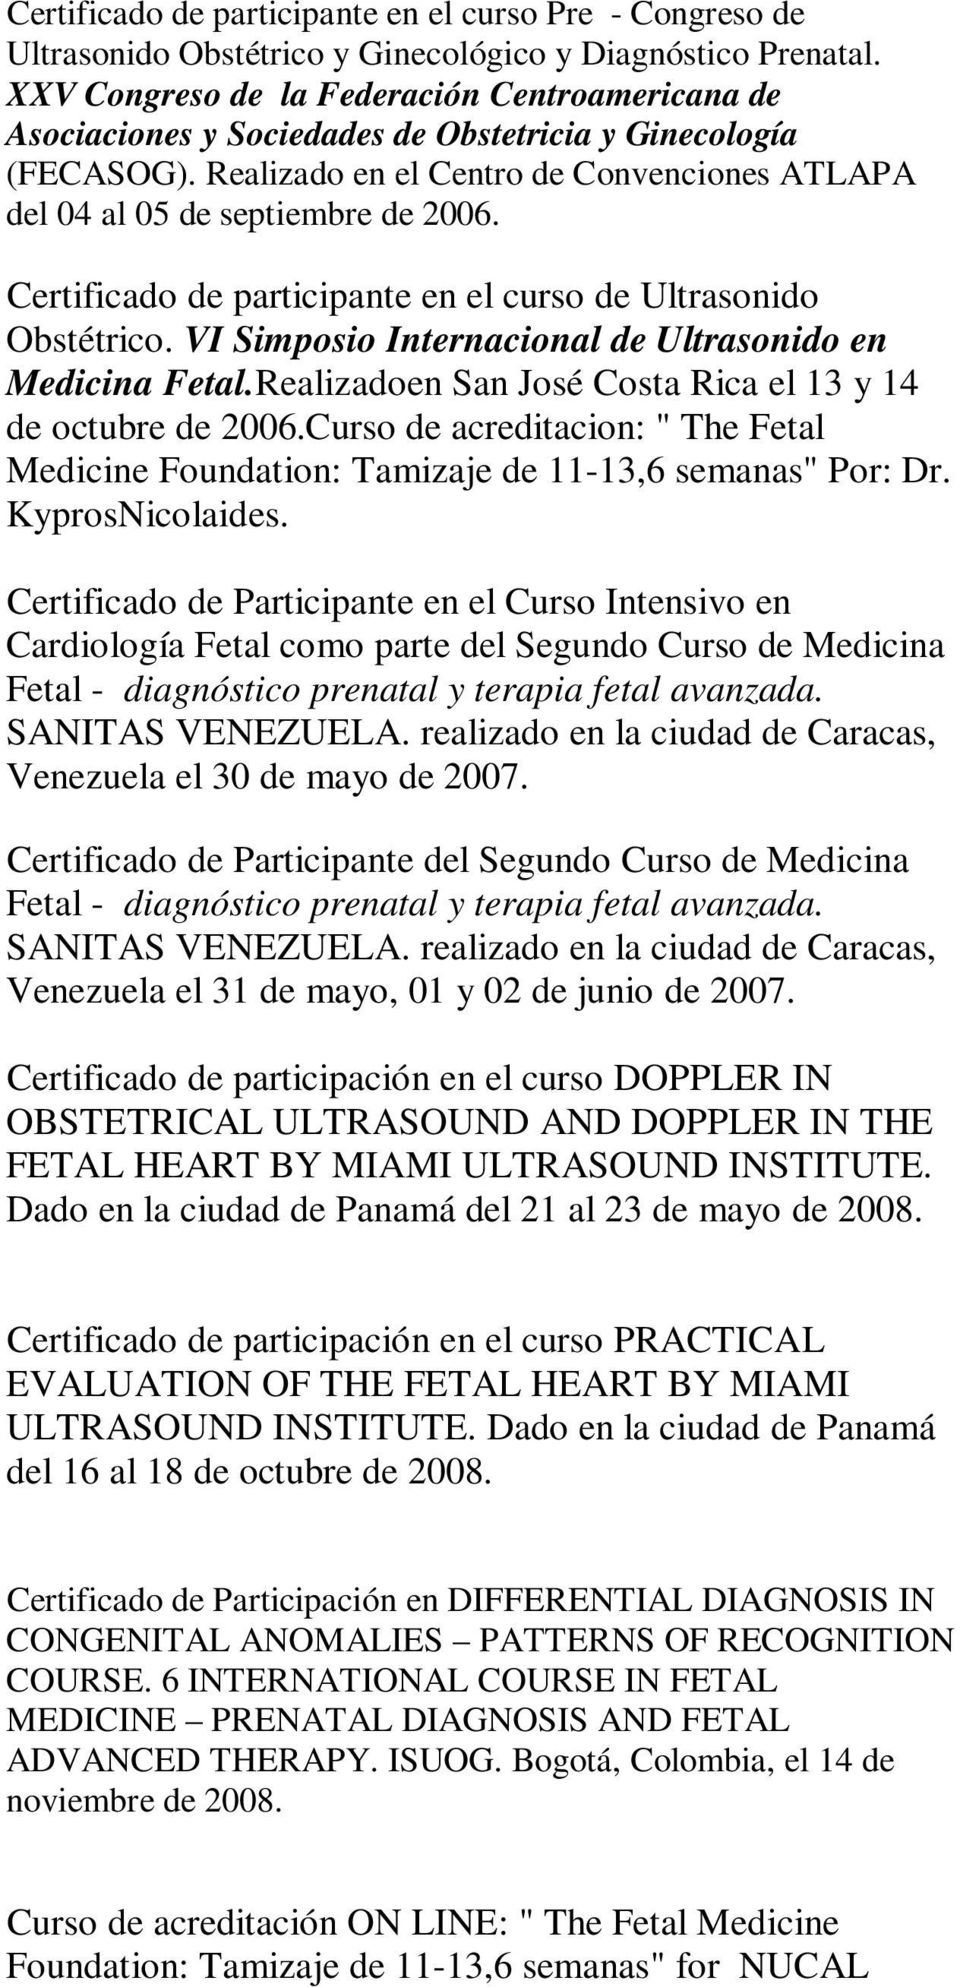 Certificado de participante en el curso de Ultrasonido Obstétrico. VI Simposio Internacional de Ultrasonido en Medicina Fetal.Realizadoen San José Costa Rica el 13 y 14 de octubre de 2006.